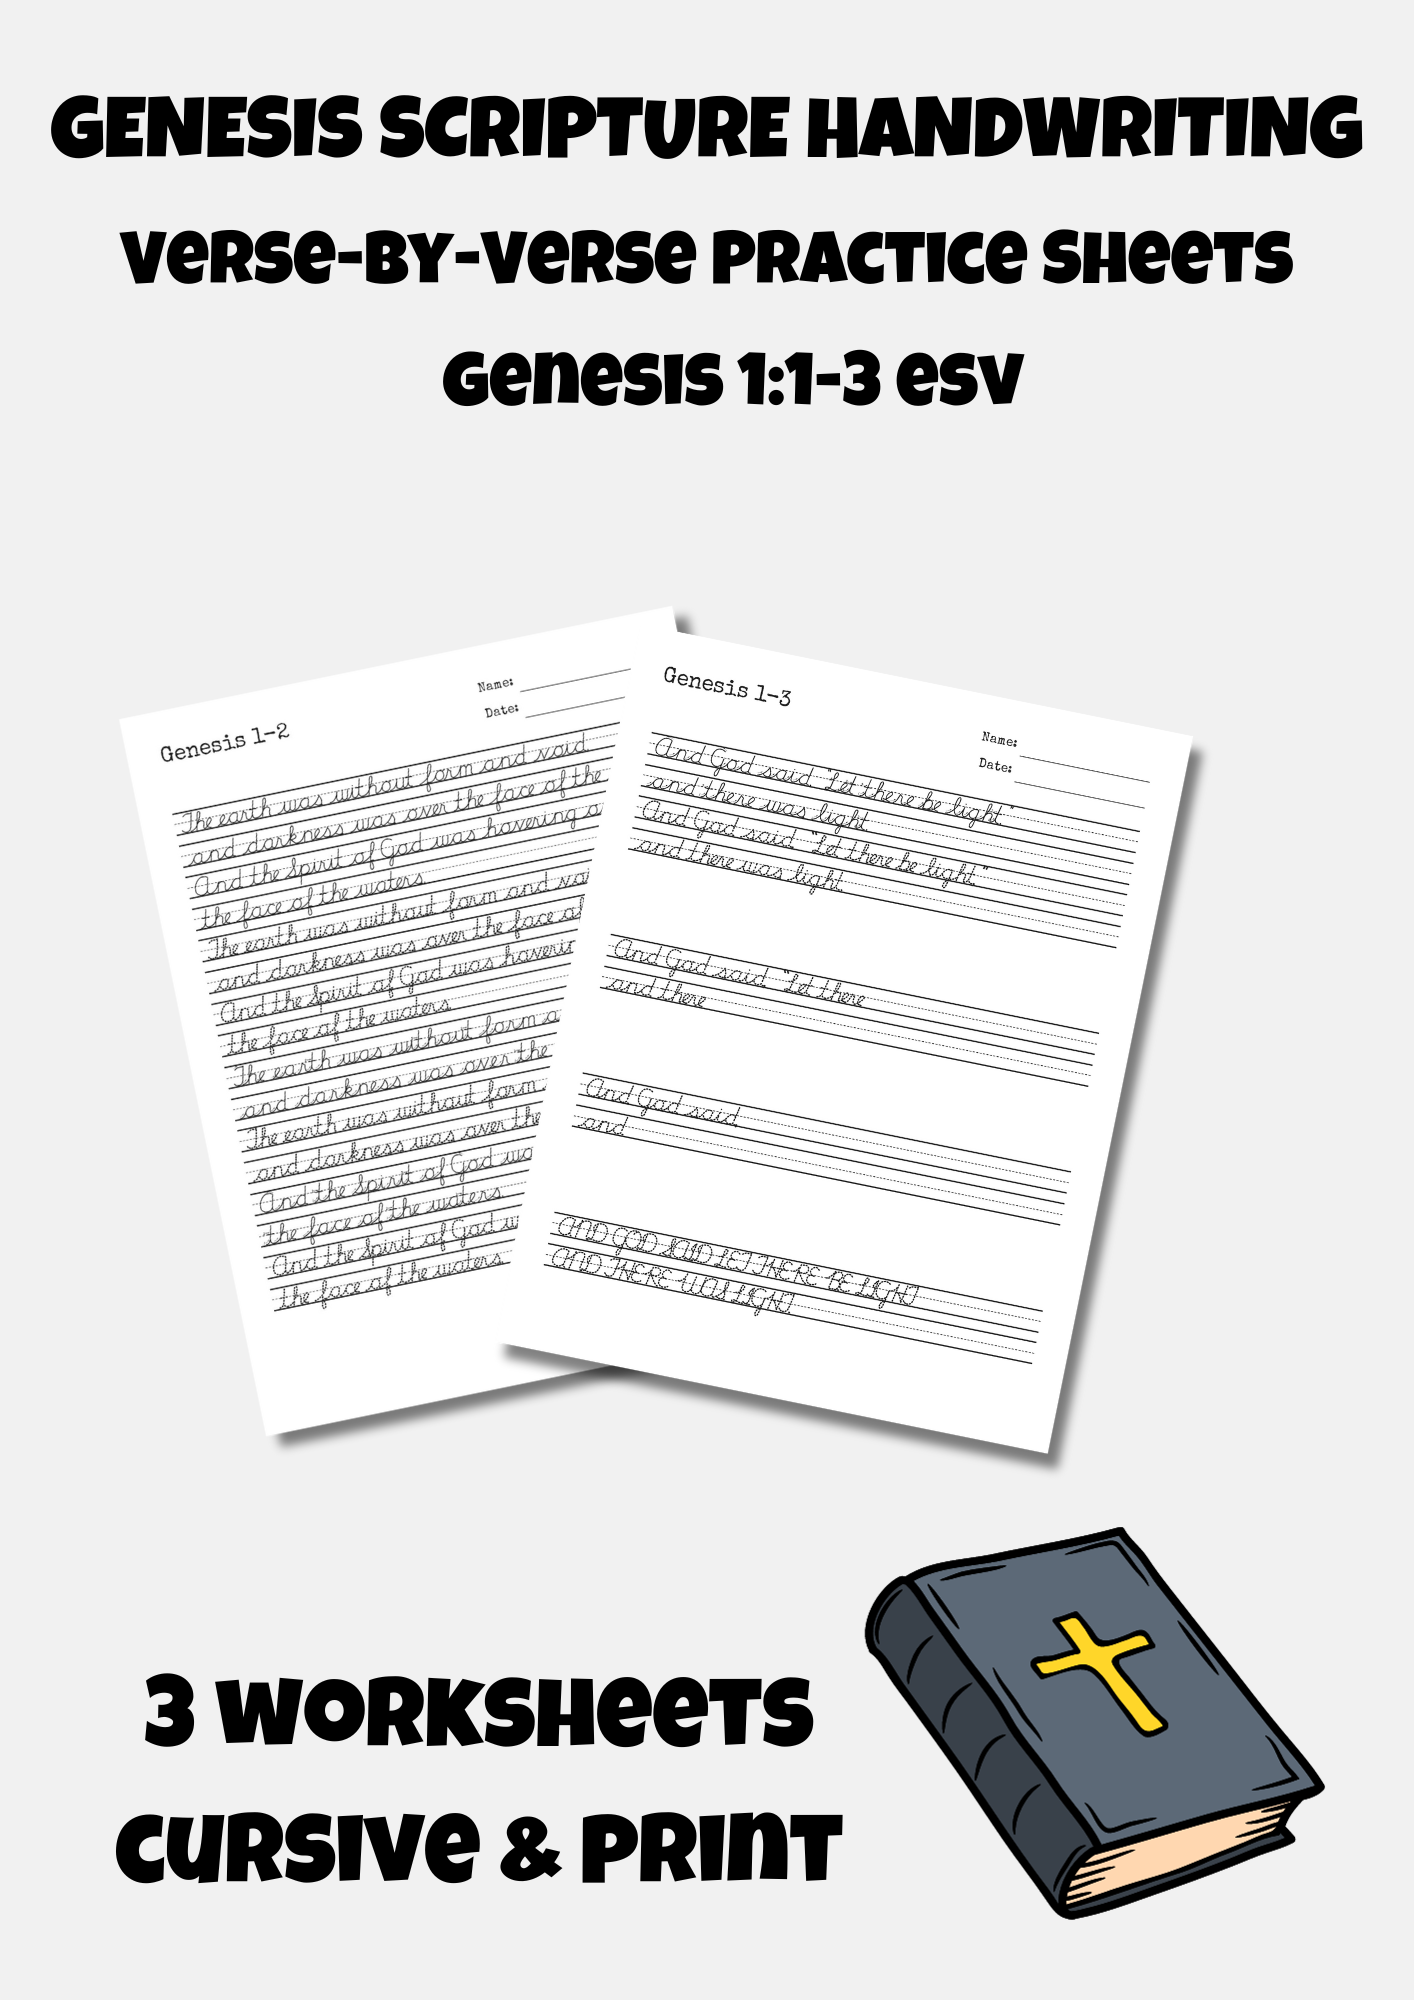 Genesis Verse-by-Verse Handwriting Practice